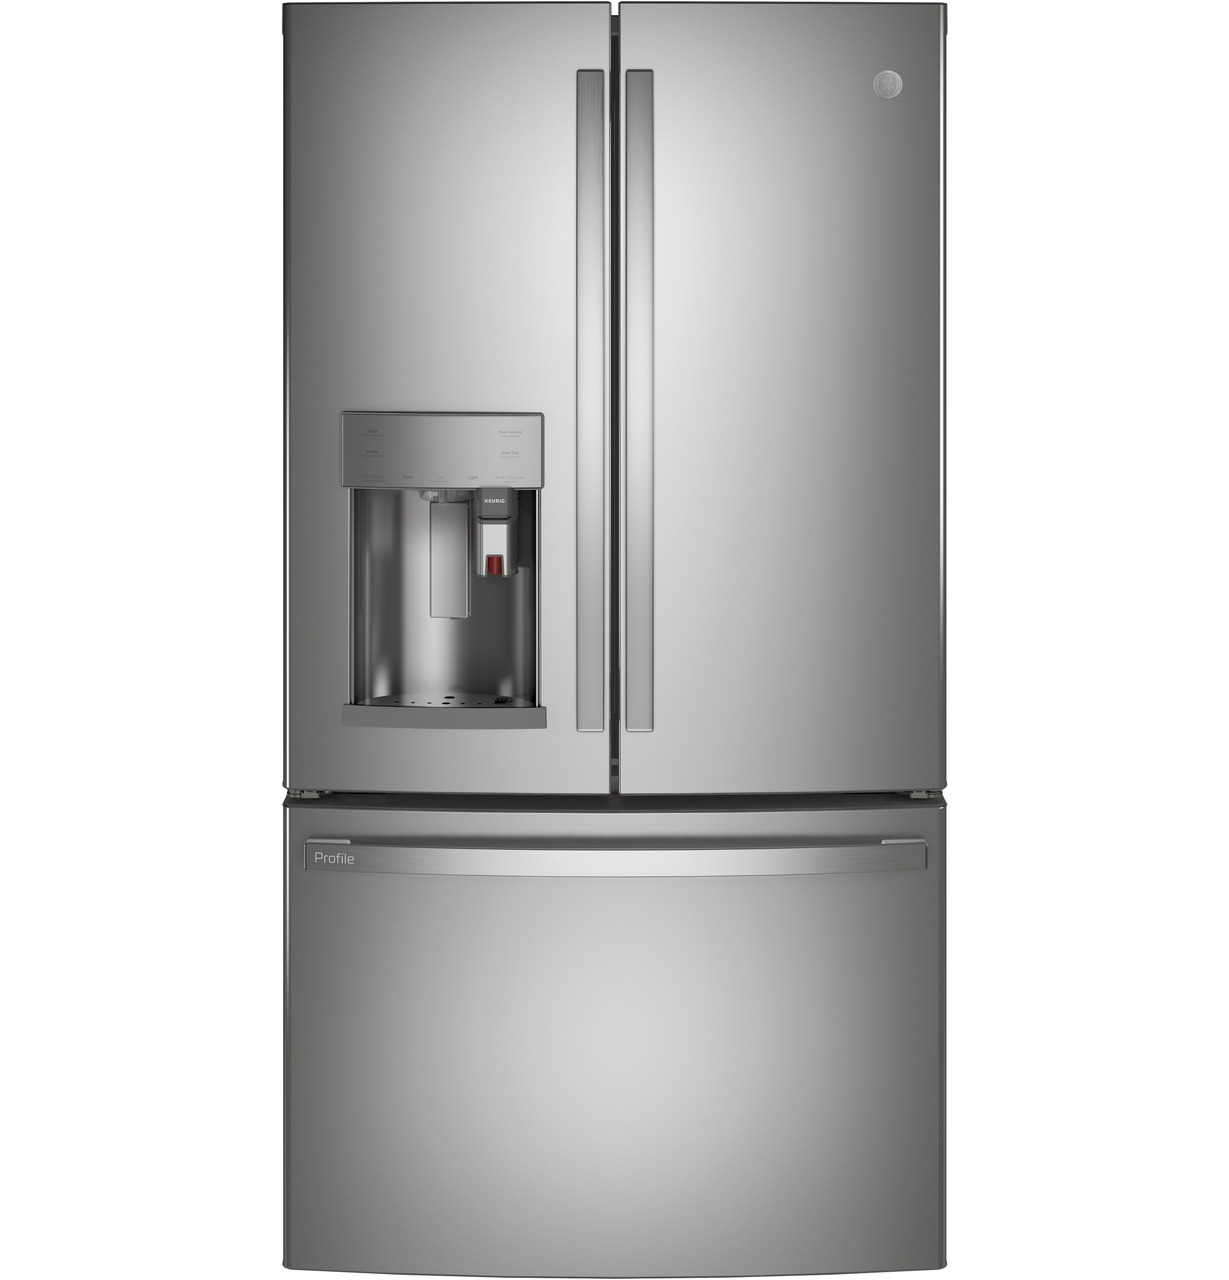 GE smart french door refrigerator with built in keurig